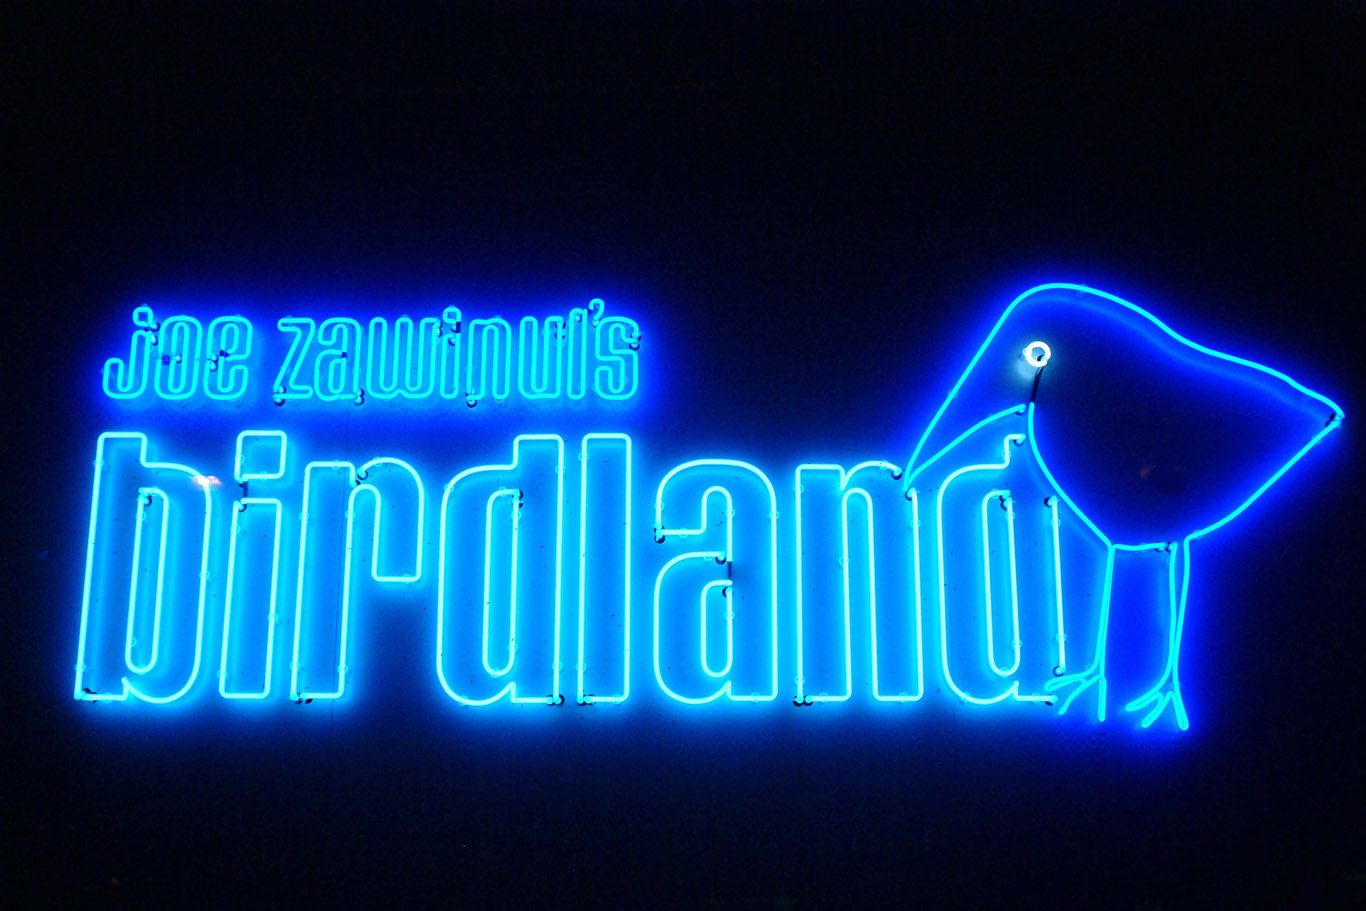 Joe Zawinul birdland